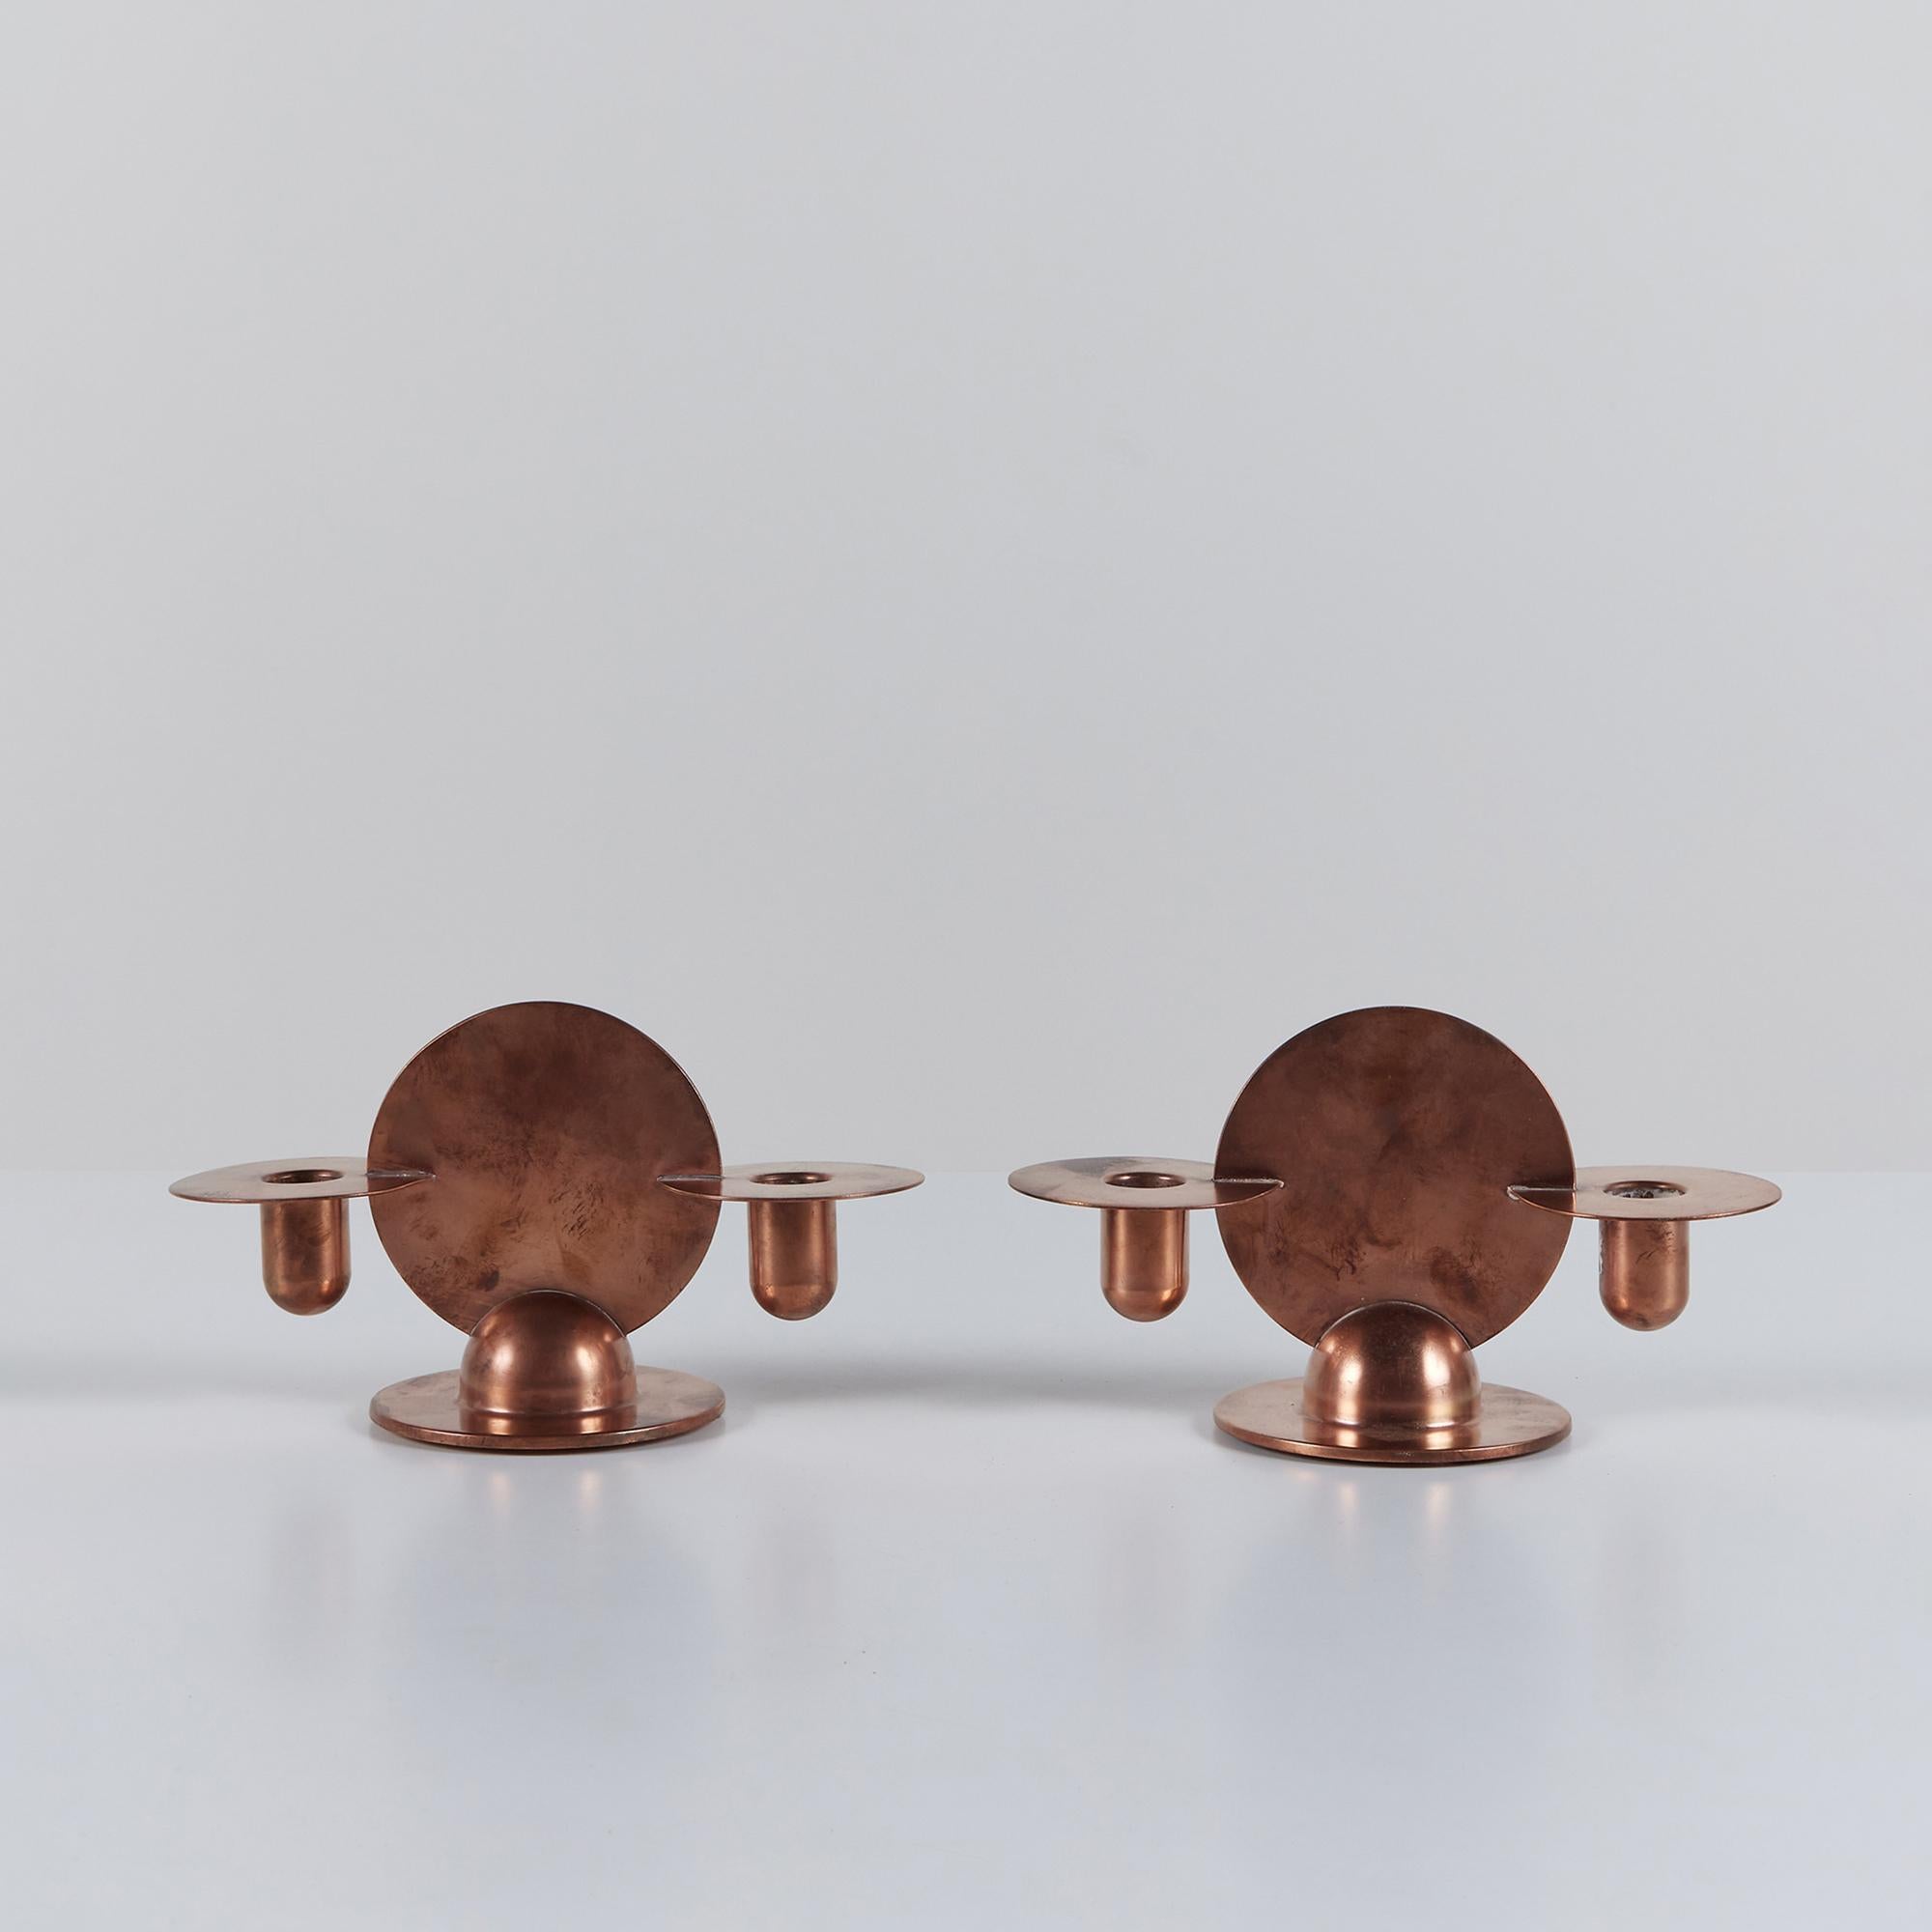 Paar Kerzenhalter aus massivem Kupfer von Walter von Nessen für Chase, ca. 1930, USA. Das Paar Art-Déco-Kerzenständer zeigt geometrische Kreise und Kugeln. Das minimalistische Design besteht aus einem mittigen Kreis und zwei kreisförmigen,